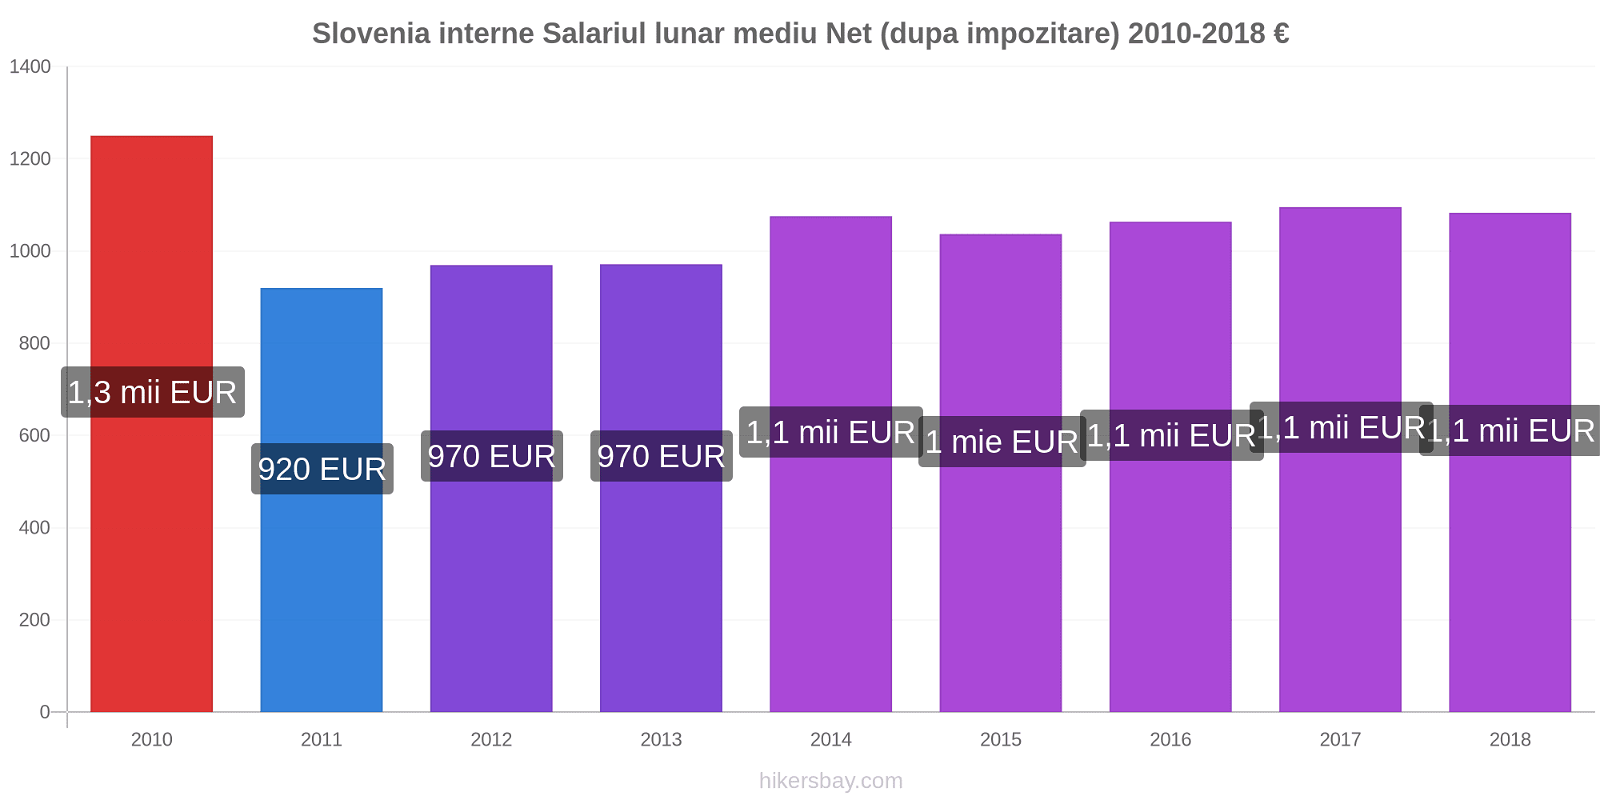 Slovenia interne modificări de preț Salariul lunar mediu Net (dupa impozitare) hikersbay.com